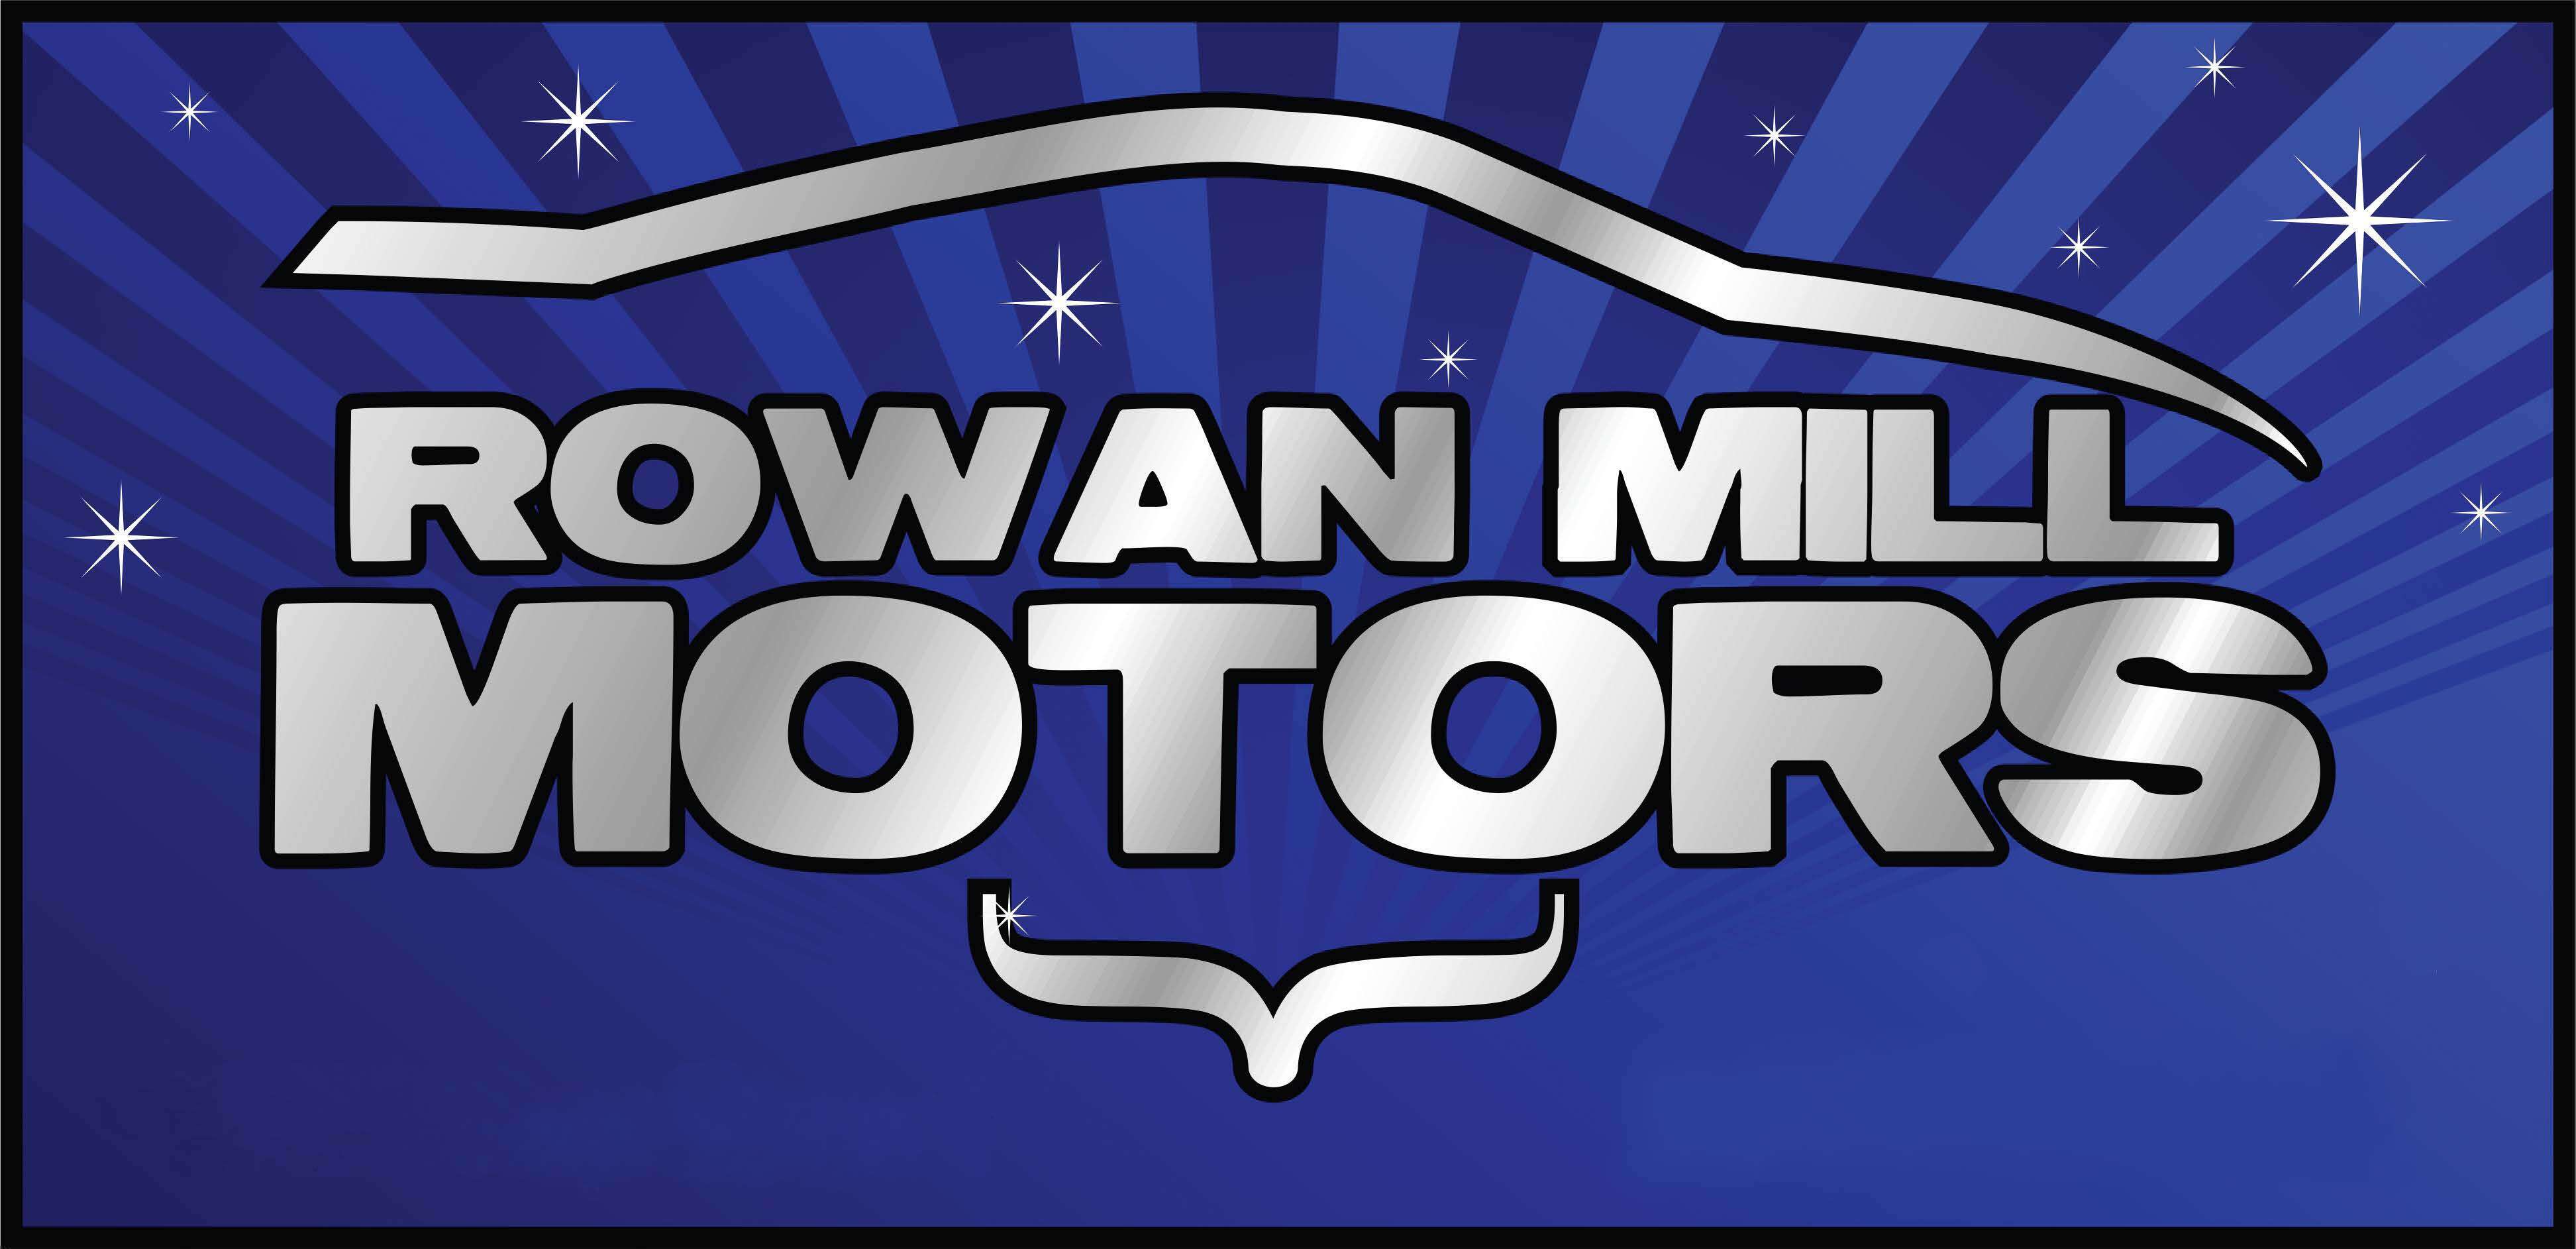 Rowan Mill Motors 